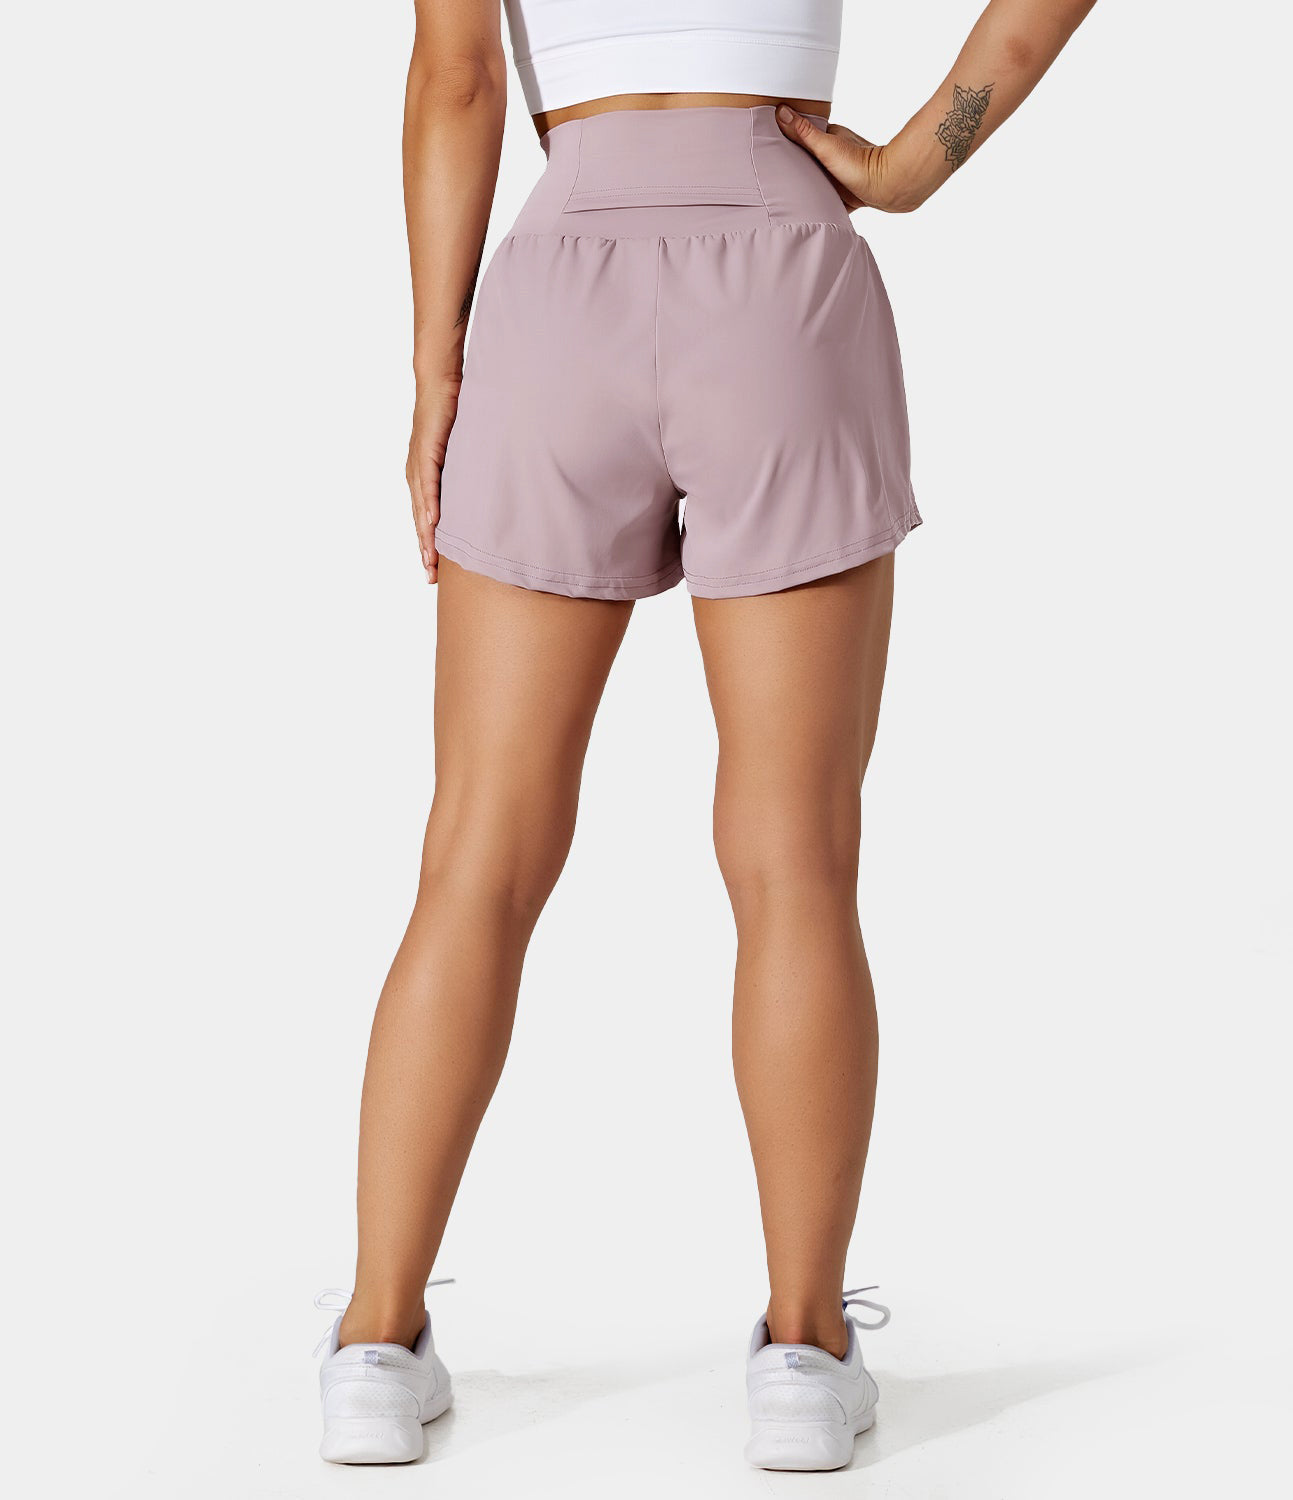 

Halara Super High Waisted Back Pocket & Side Hidden Pocket 2-in-1 Yoga Shorts 2.5" Gym Short - Lunar Rock -  booty shorts